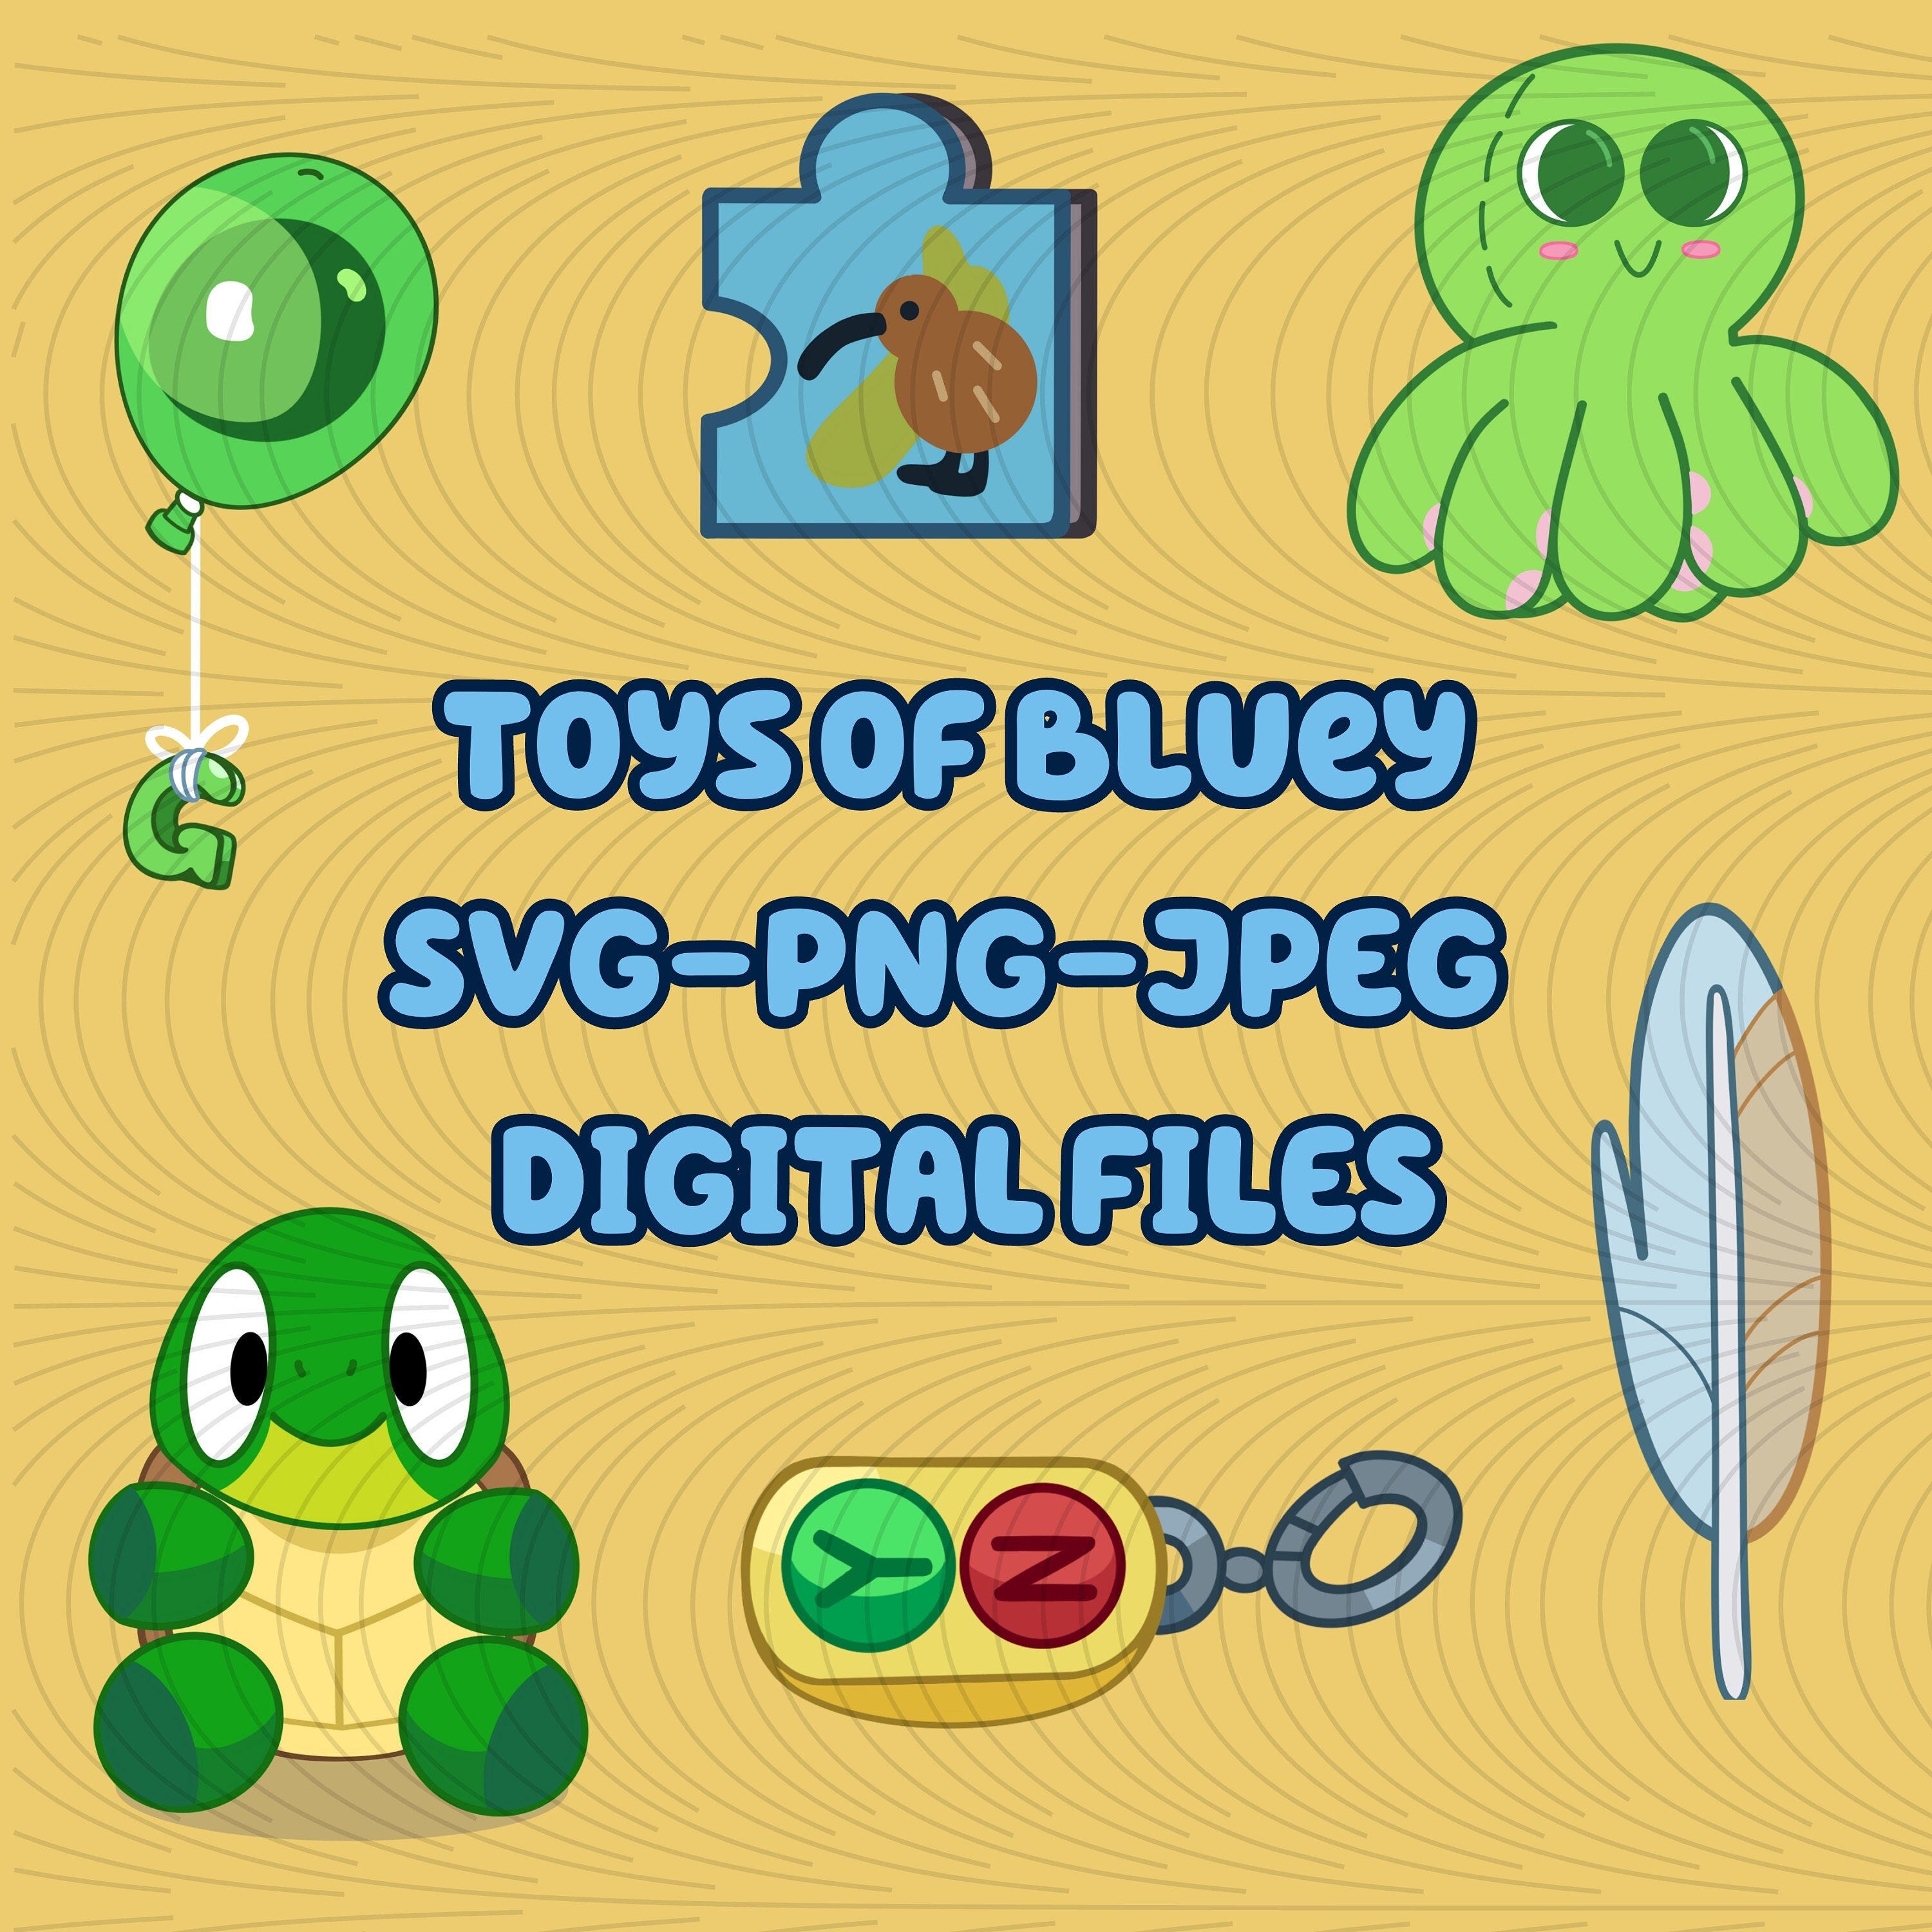 Toys of Bluey SVG - PNG - JPG Bundle- Bluey Toys & Object Images- Bluey Svg Cricut Bundle- Bluey Friends png- Bluey Birthday Invitation